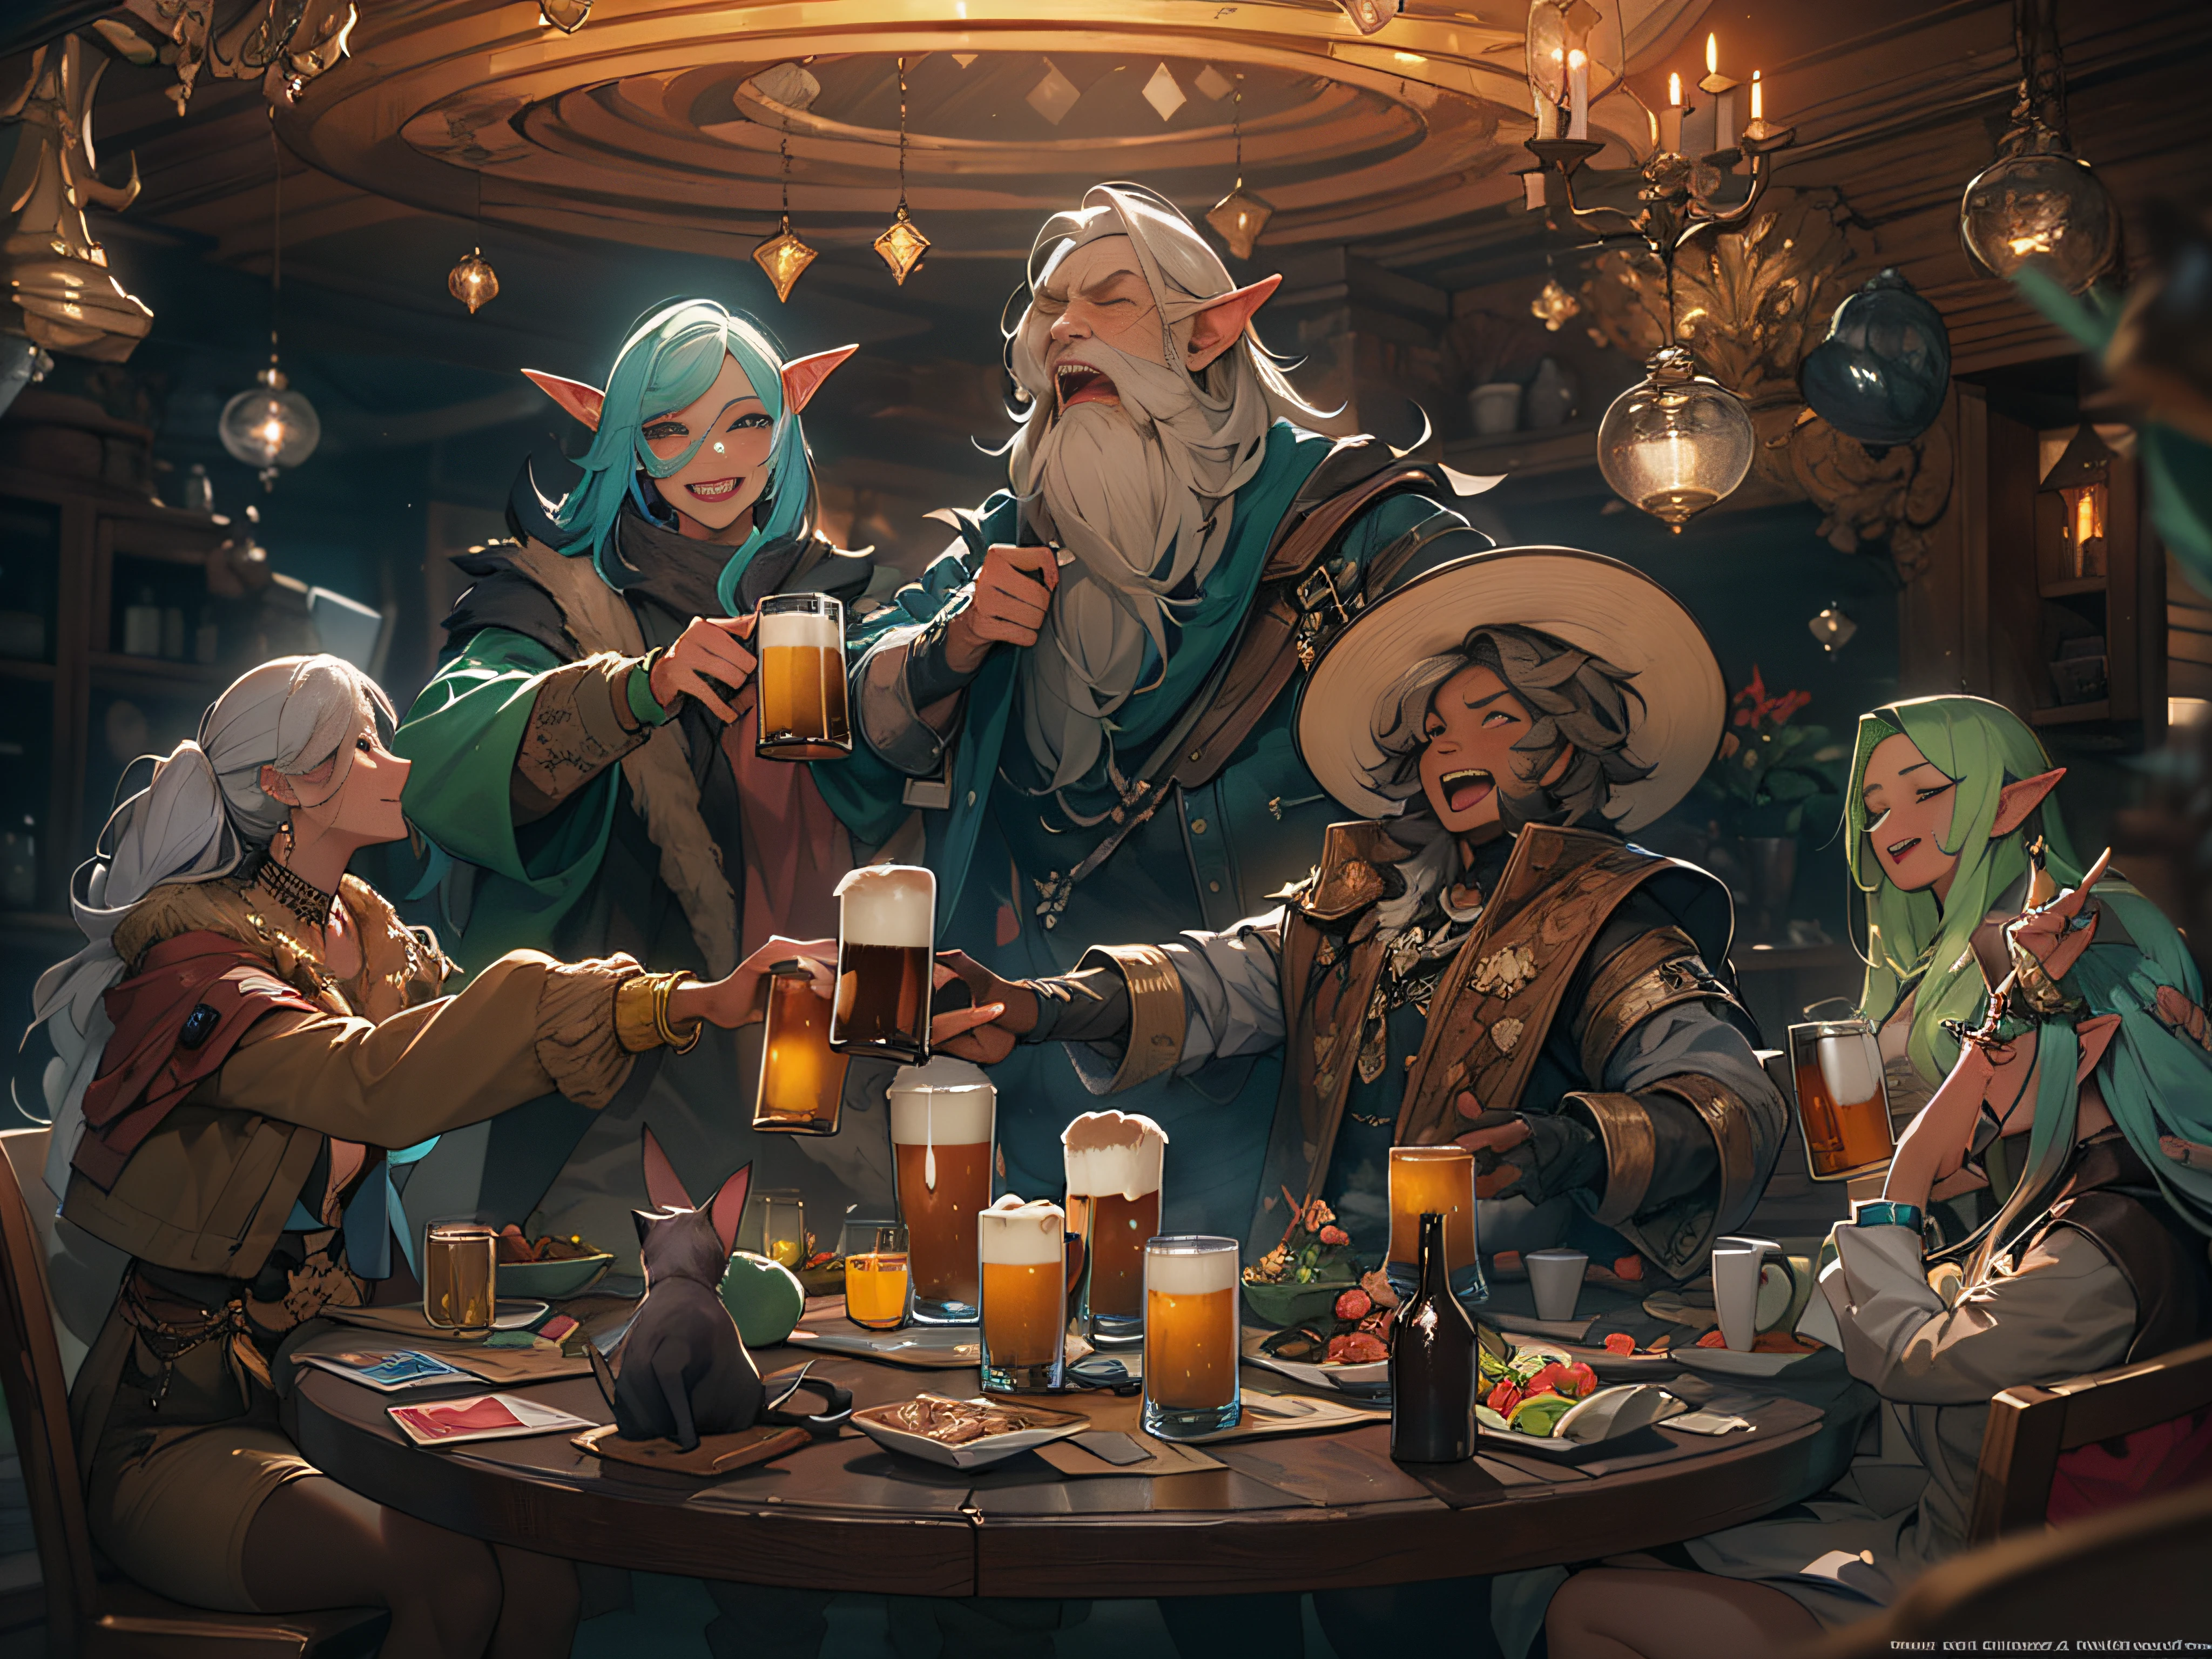 Obra de arte, qualidade máxima, sobrenatural , ((5 pessoas de 5 raças diferentes sentadas ao redor de uma mesa redonda)), eles estão felizes e sorrindo, Cerveja na mesa, (((5 pessoas brindam com canecas de cerveja)))+++, ((5 pessoas seguram cerveja))++, QUEBRAR 5 people are mixed gender, Elfa Loira, anã musculosa curta, vaqueiro, dark haired cat girl and old wizard BREAK fantasia, sobrenatural fantasia, deep fantasia, todos sorridentes , atmosfera feliz, QUEBRAR, detalhe, realista, 4k highly detalheed digital art, renderização de octanas, bioluminescência, QUEBRAR 8K resolution concept art, Realismo, Mapa de Estudo, arte oficial, ilustração, Linha clara, (legal_Cor), composição perfeita, absurdo, fantasia, foco, regra dos terços